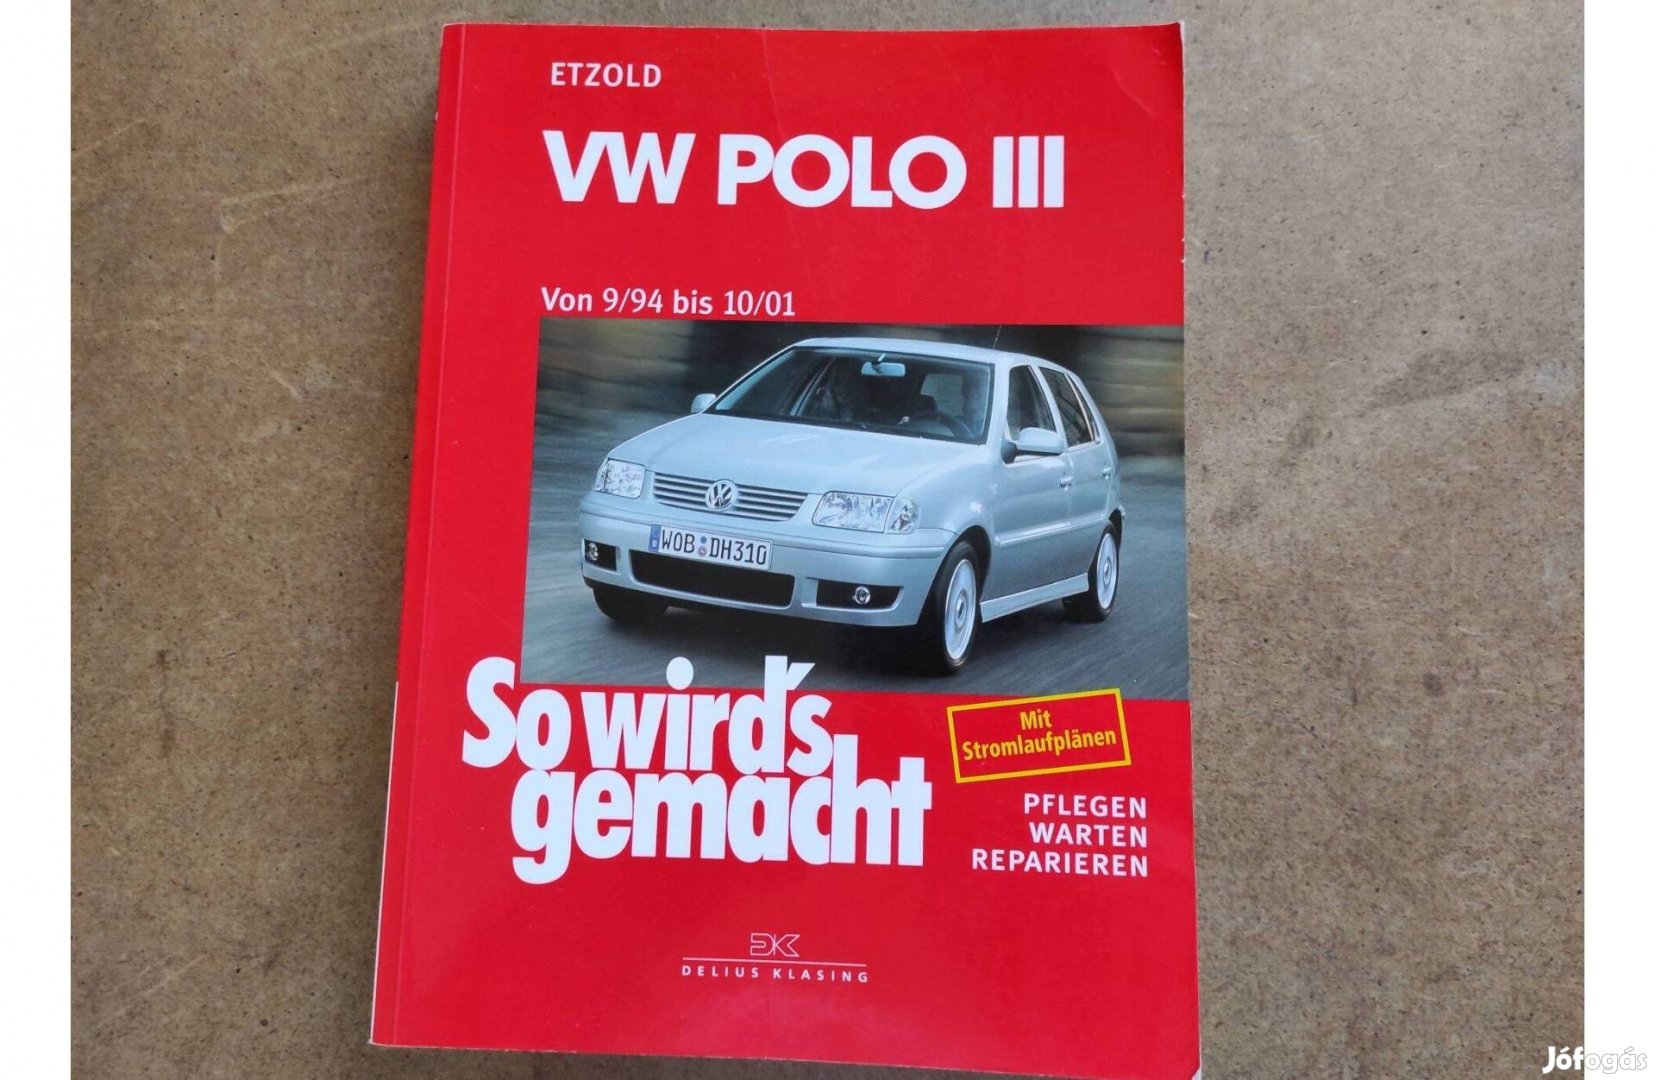 Volkswagen Vw, Polo III. javítási karbantartási könyv